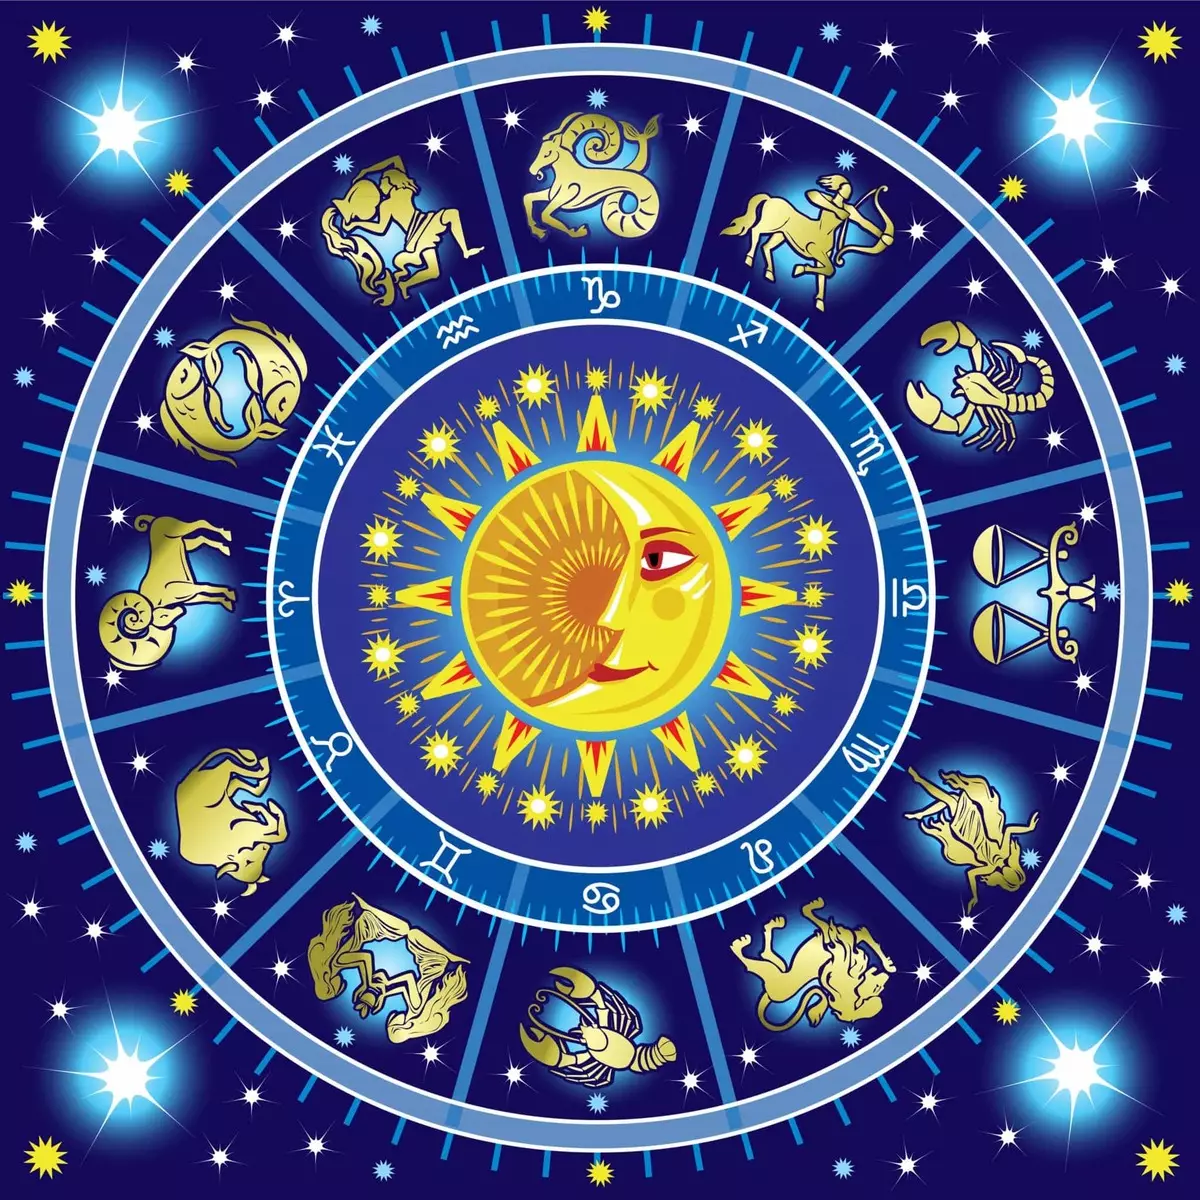 Keserasian pada horoskop